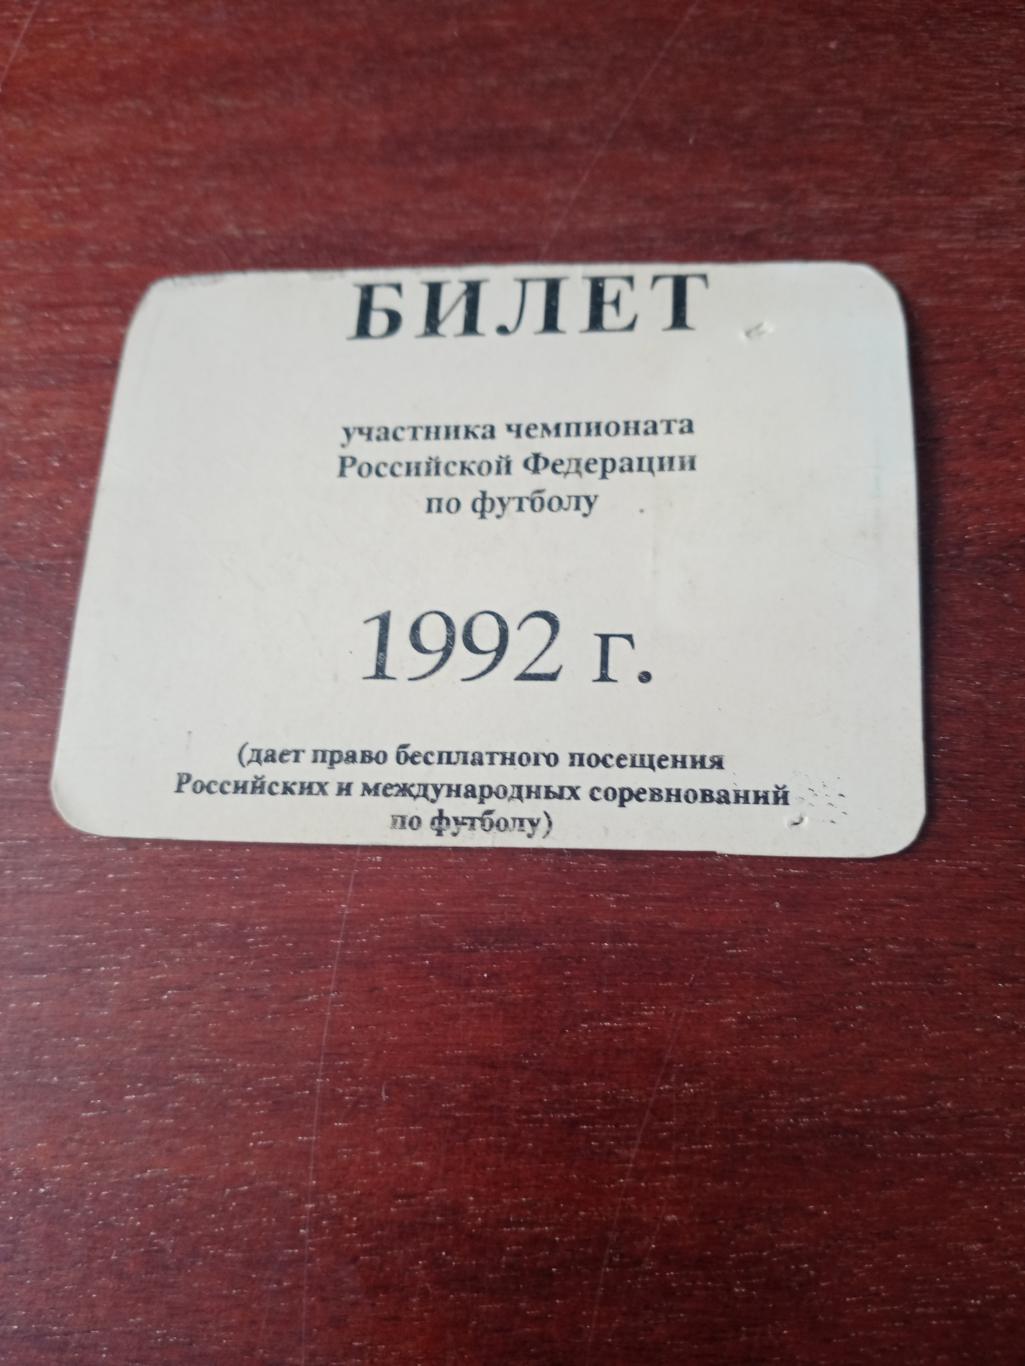 Именной билет участника Первого чемпионата России. 1992 год